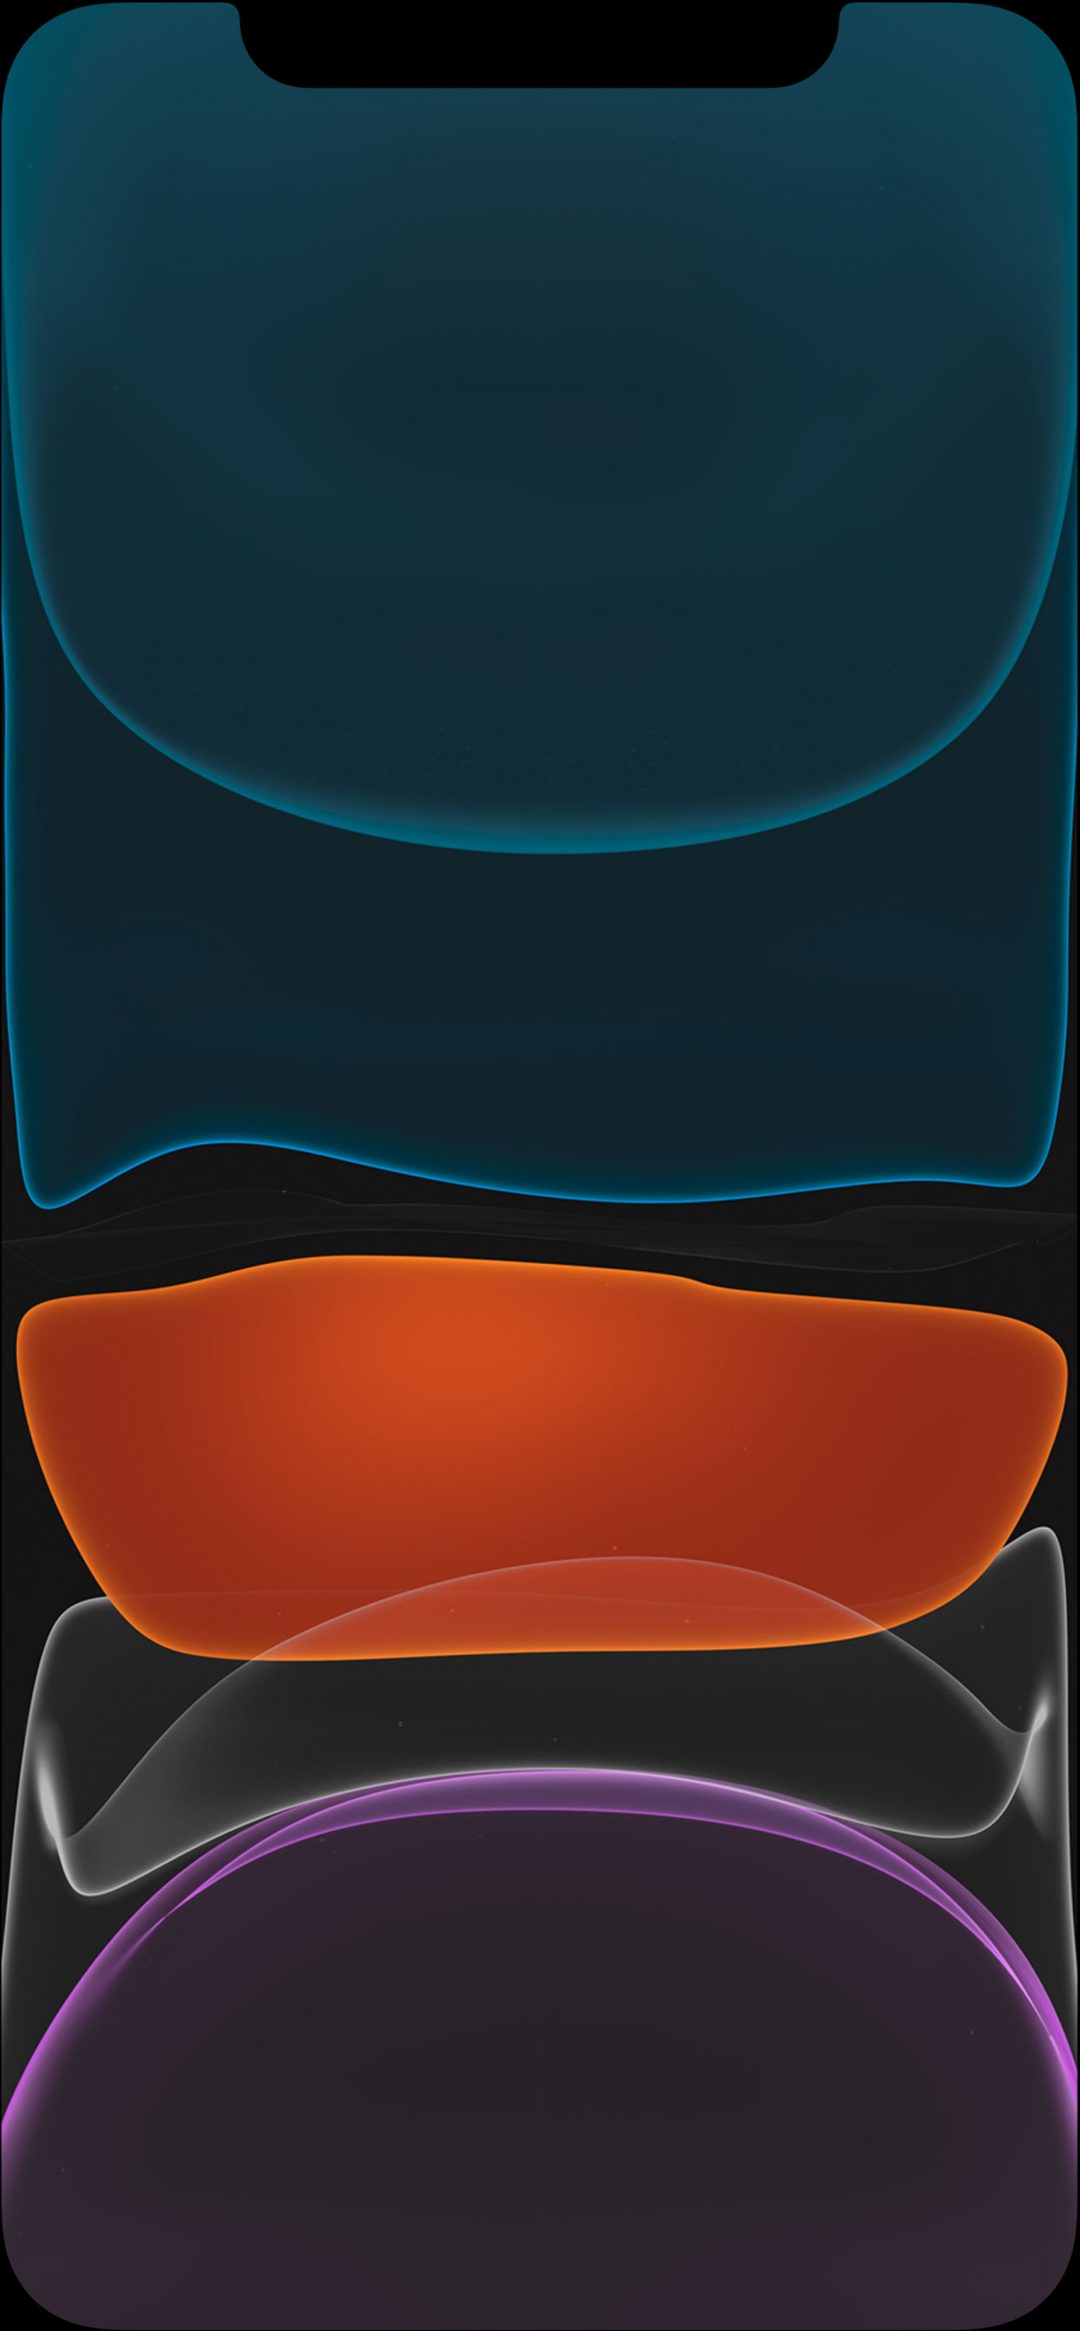 iphone fondo de pantalla,azul,naranja,azul eléctrico,diseño,modelo